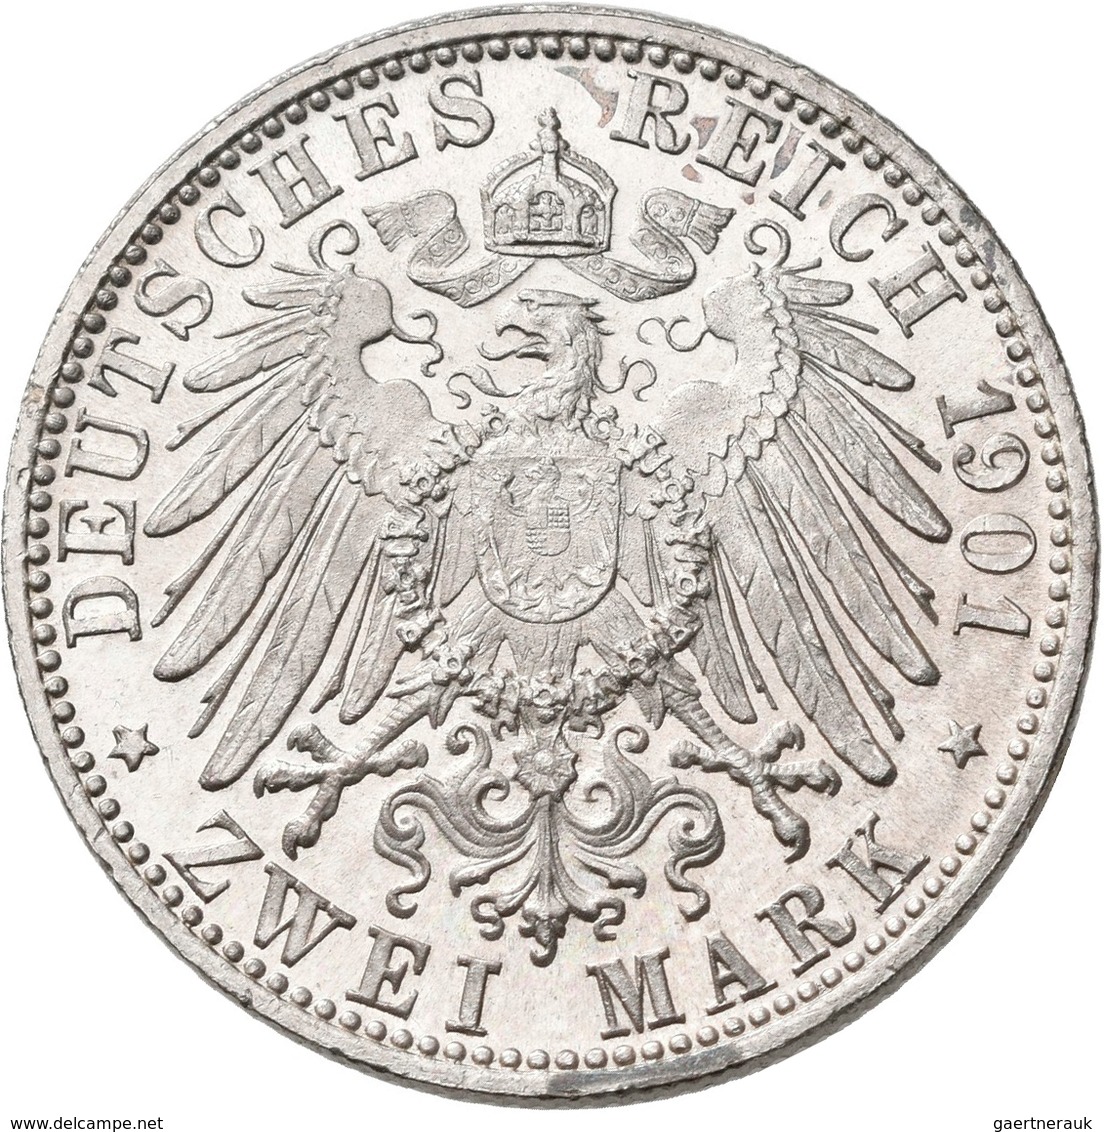 Sachsen-Meiningen: Georg II. 1866-1914: 2 Mark 1901 D, Jaeger 149, Kl. Kratzer, Sonst Vorzüglich. - Taler Et Doppeltaler